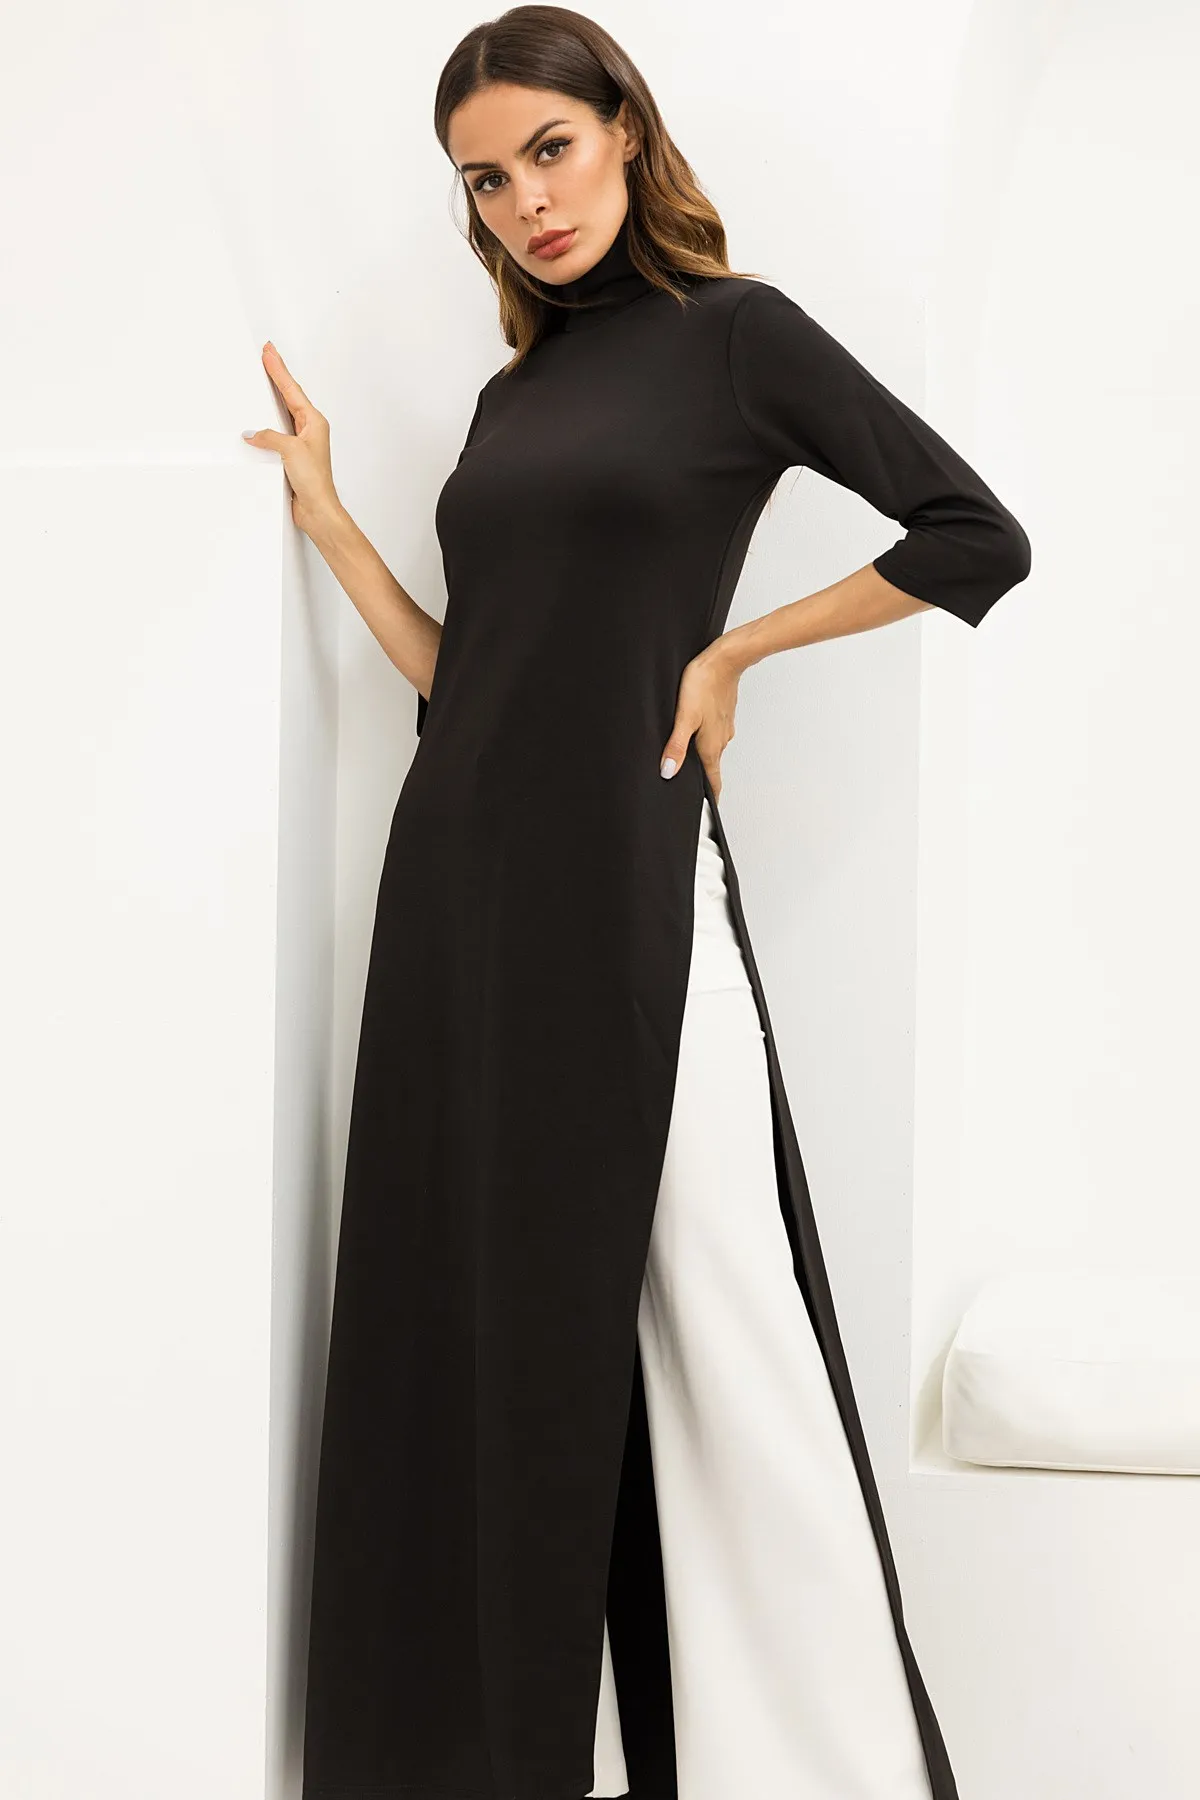 Women Fashion Plus Size Turtleneck Maxi Dress Asymmetrical Western ...